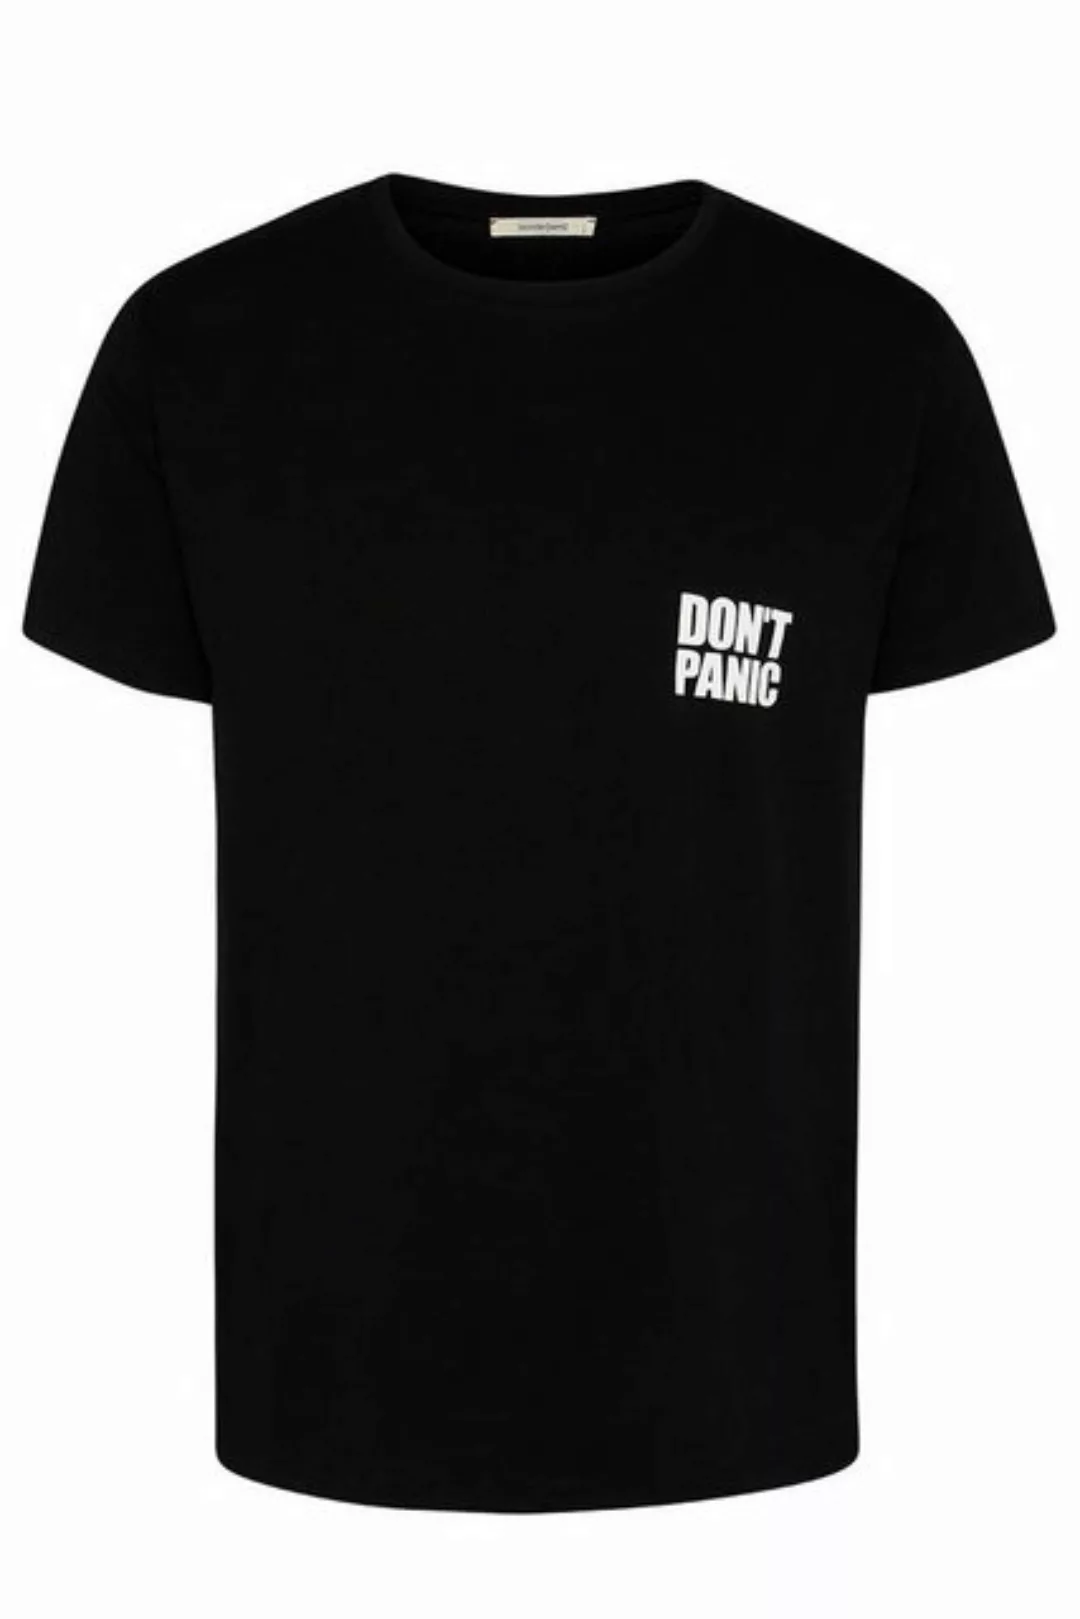 wunderwerk T-Shirt Tee don't panic small male günstig online kaufen